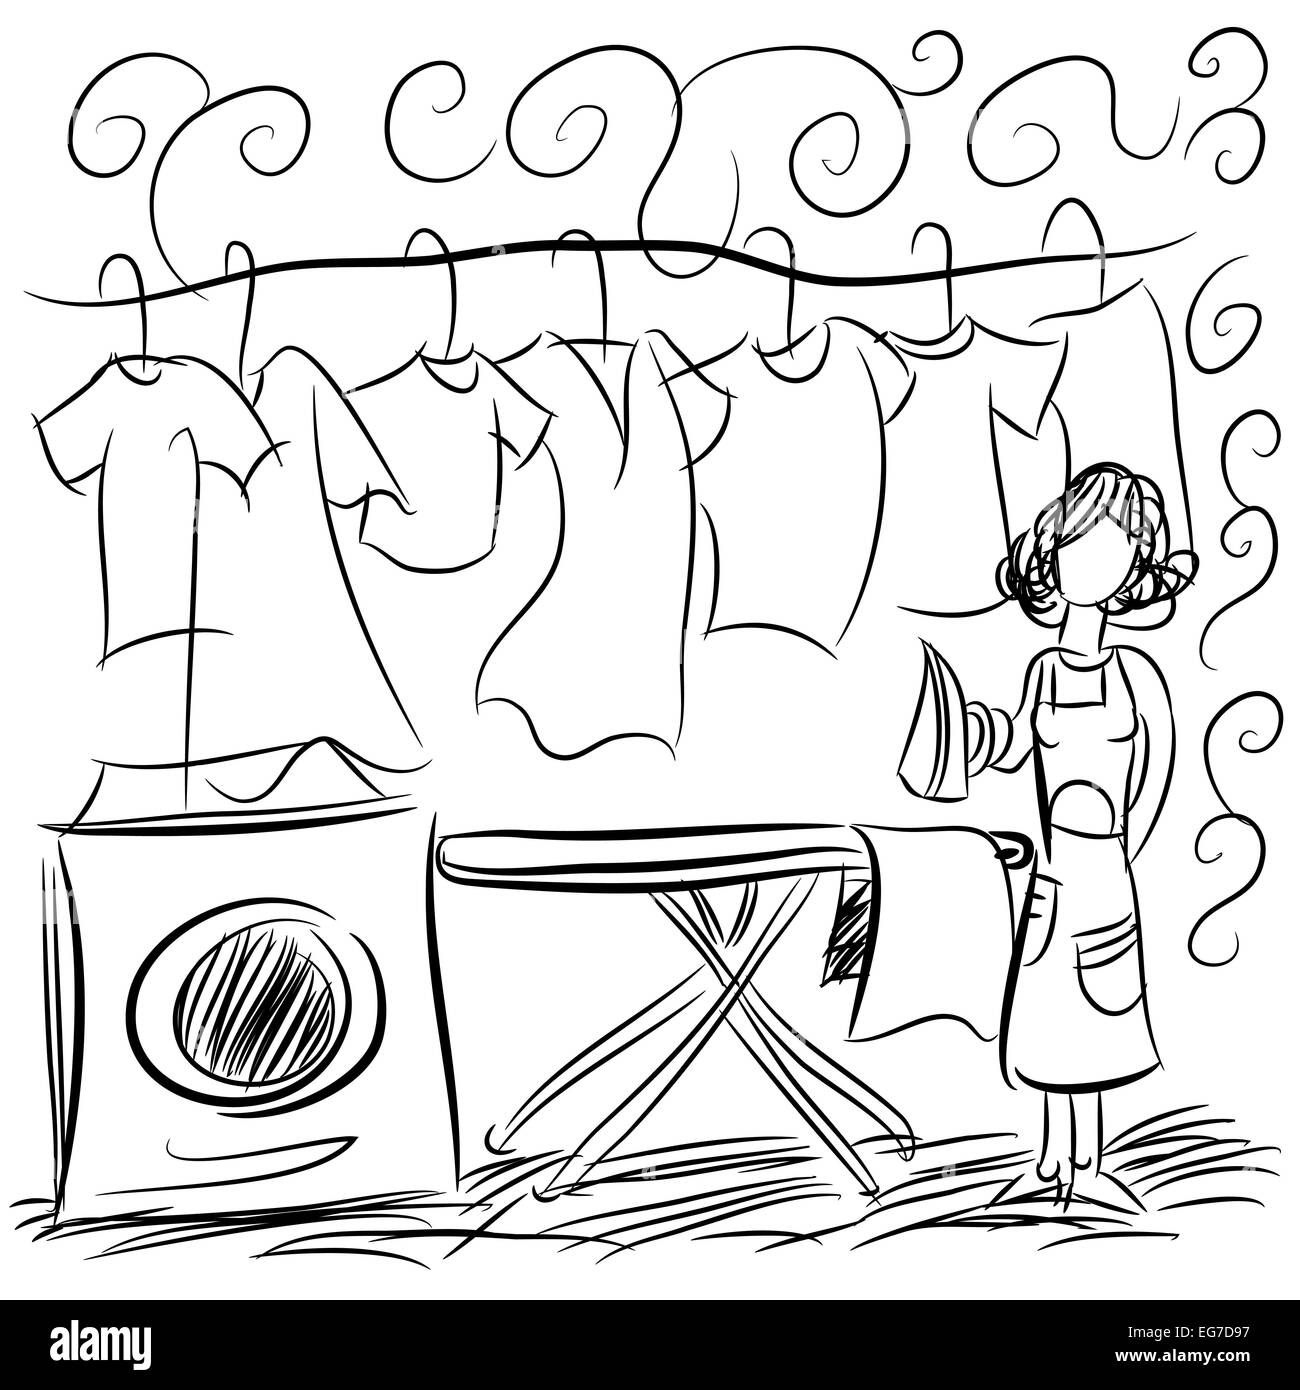 Ein Bild von einer Wäscherei-Service-Zeichnung. Stockfoto